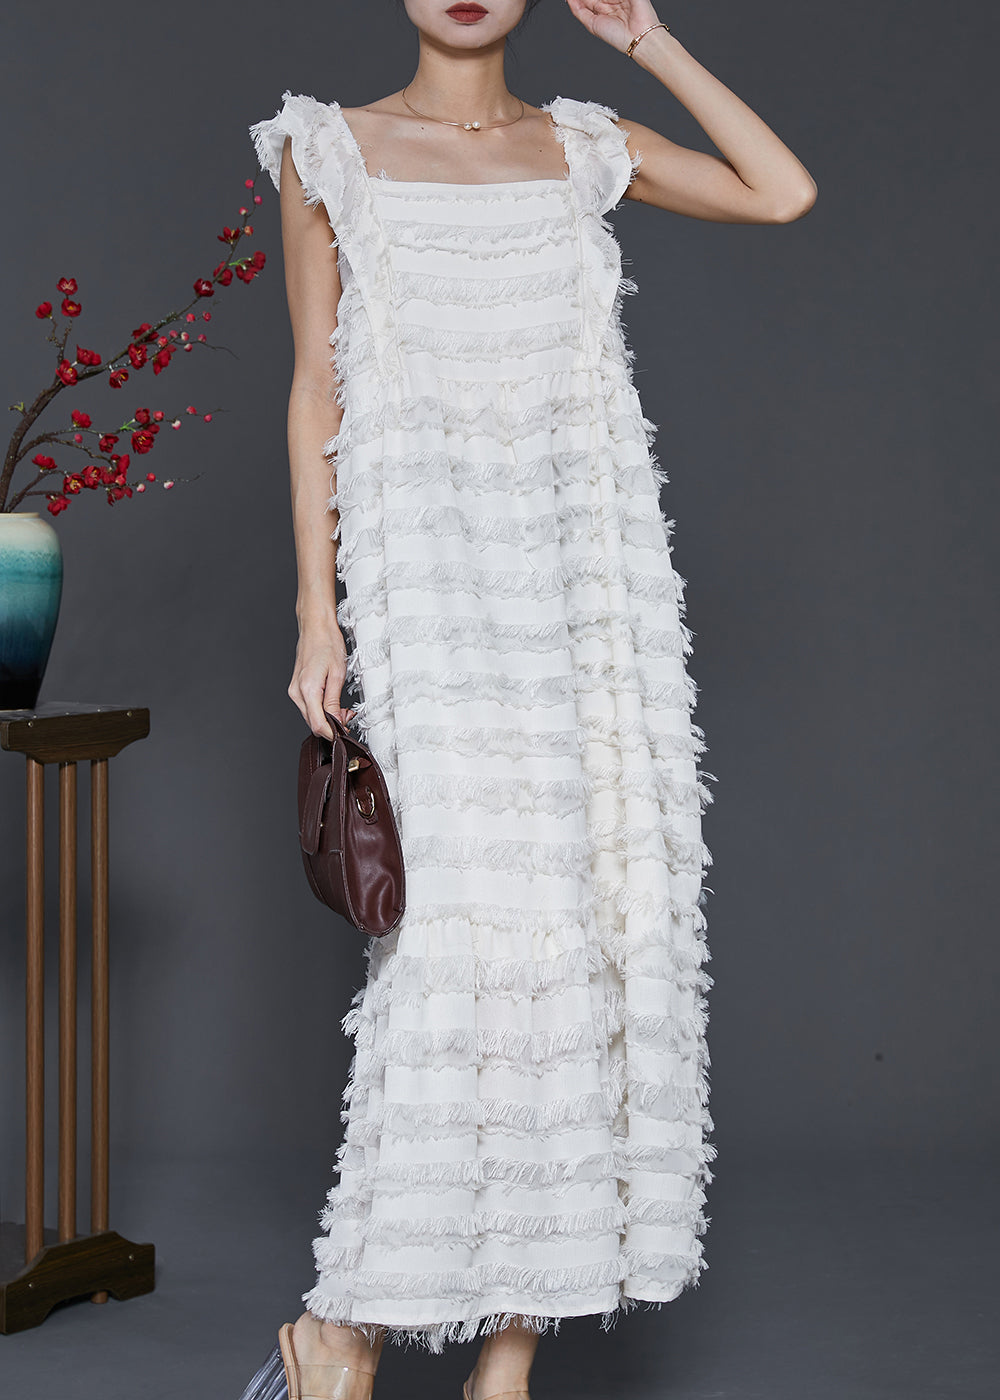 Bohemian White Tasseled Cotton Summer Dresses Sleeveless